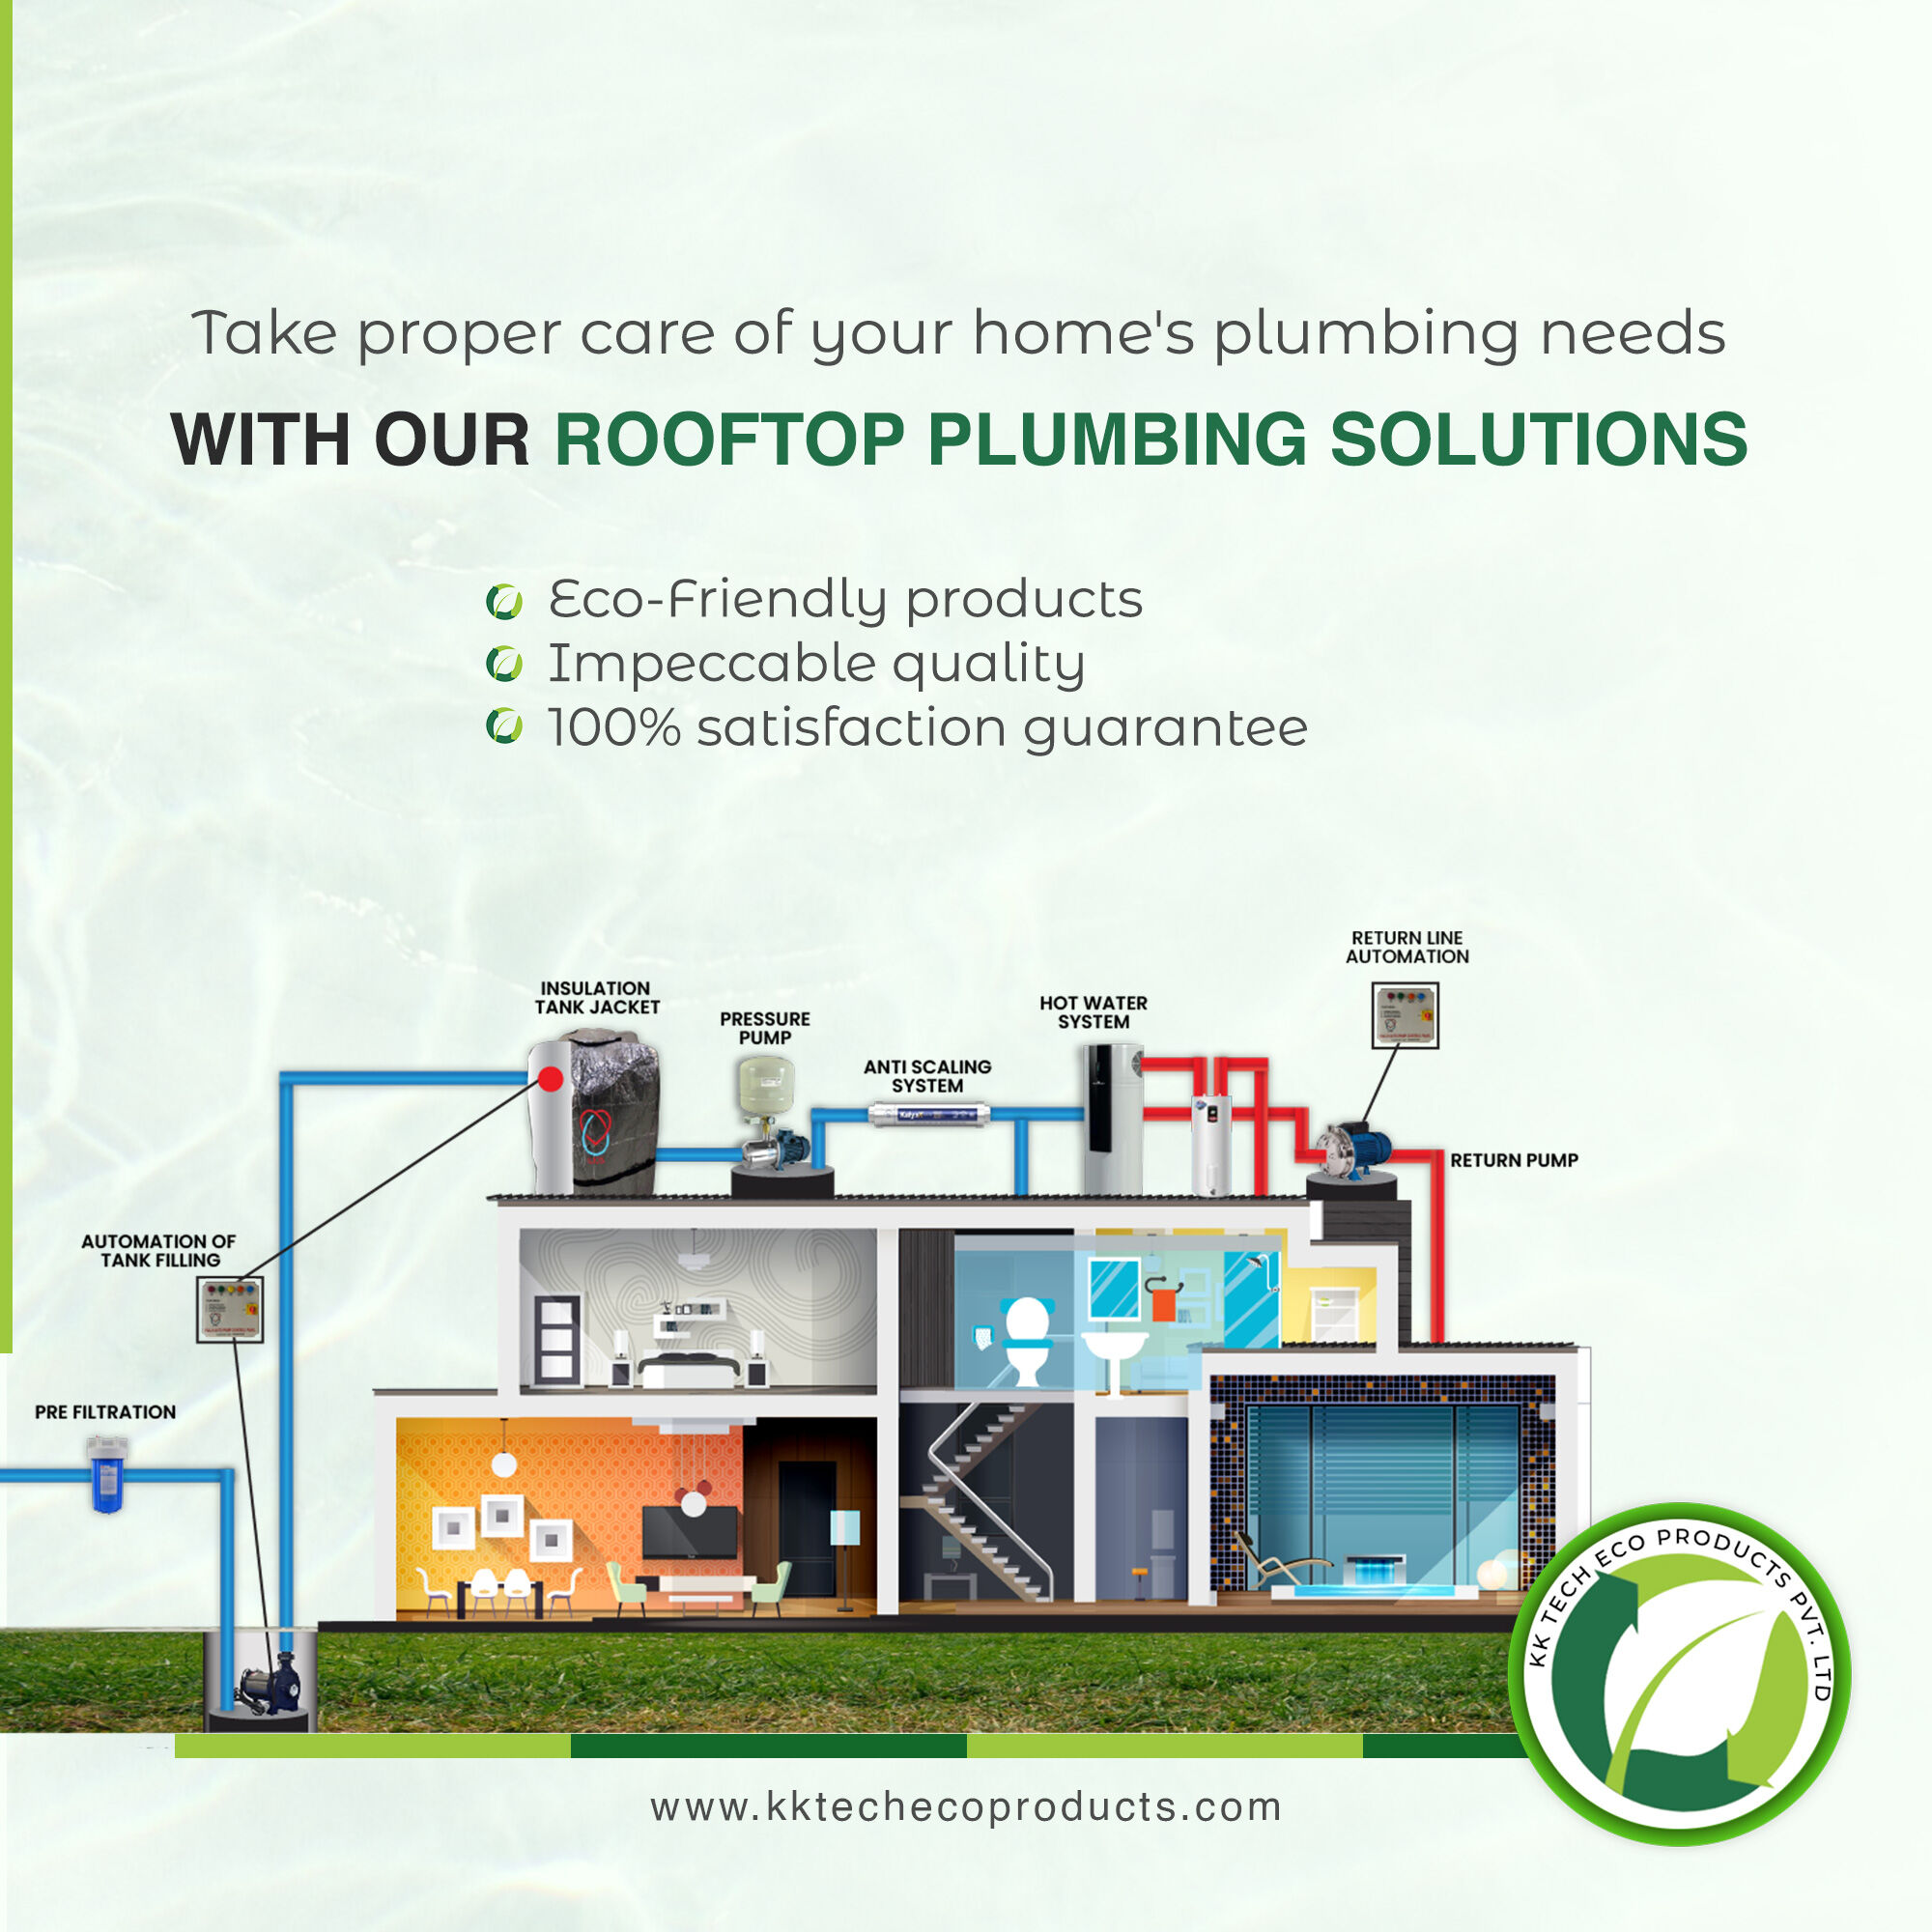 Rooftop Plumbing Solutions